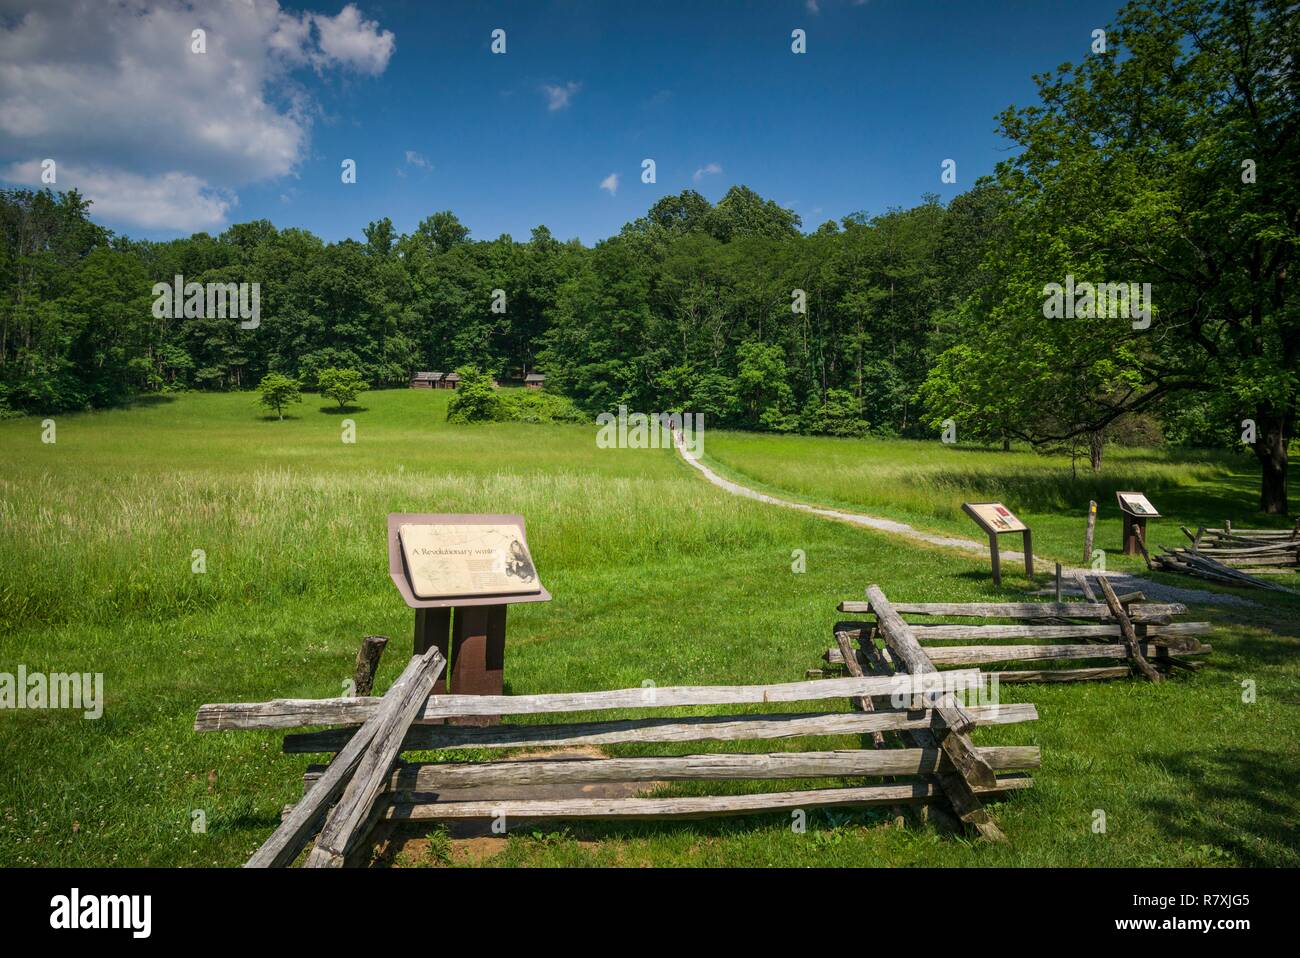 Stati Uniti, New Jersey, Morristown, Morristown National Historical Park, Jockey cava, winter camp e cabine sito utilizzata dai soldati americani durante la guerra rivoluzionaria americana Foto Stock